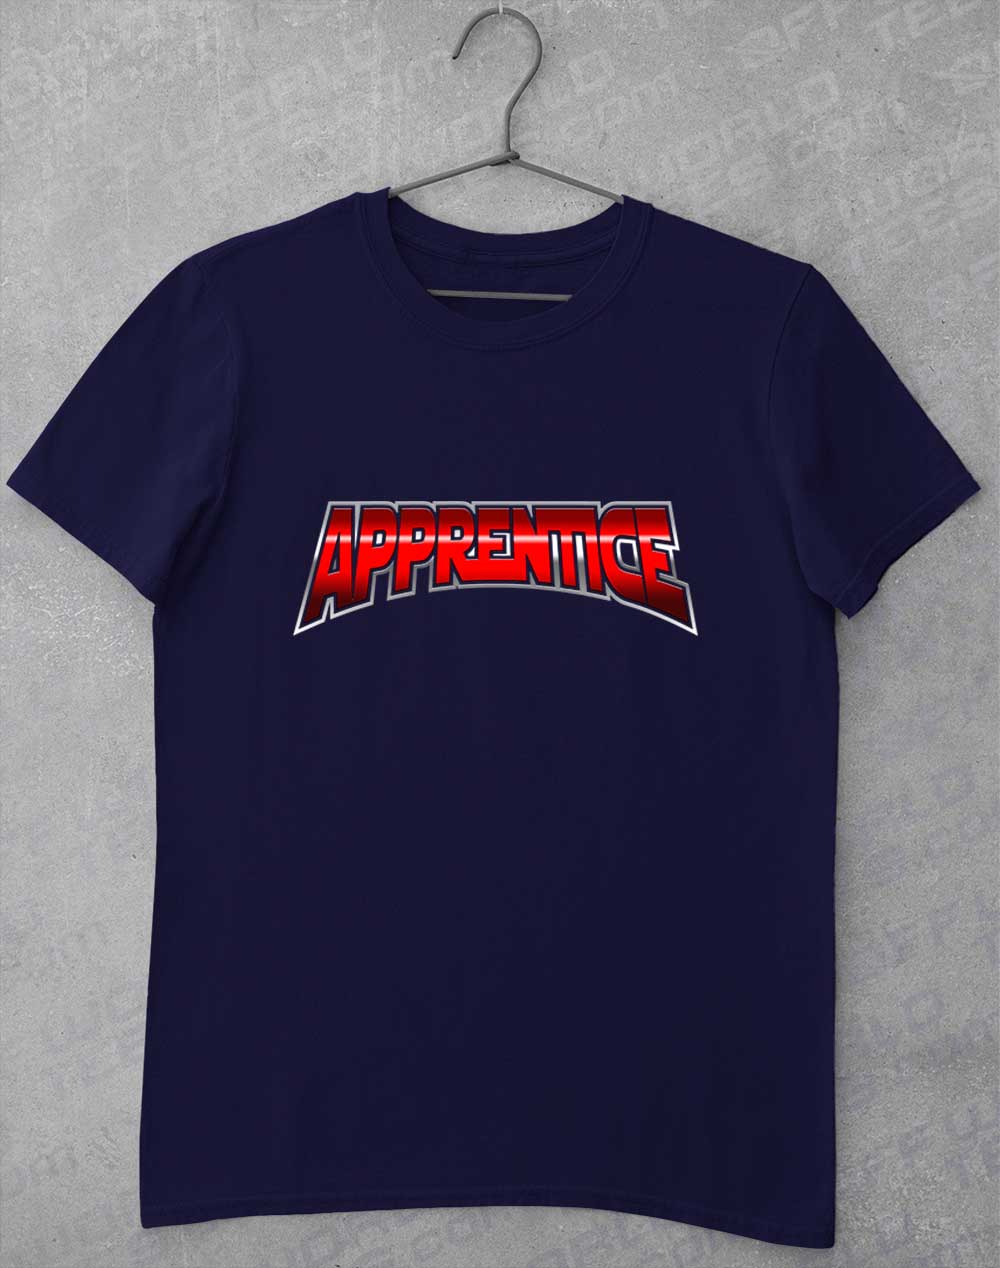 Navy - Apprentice T-Shirt